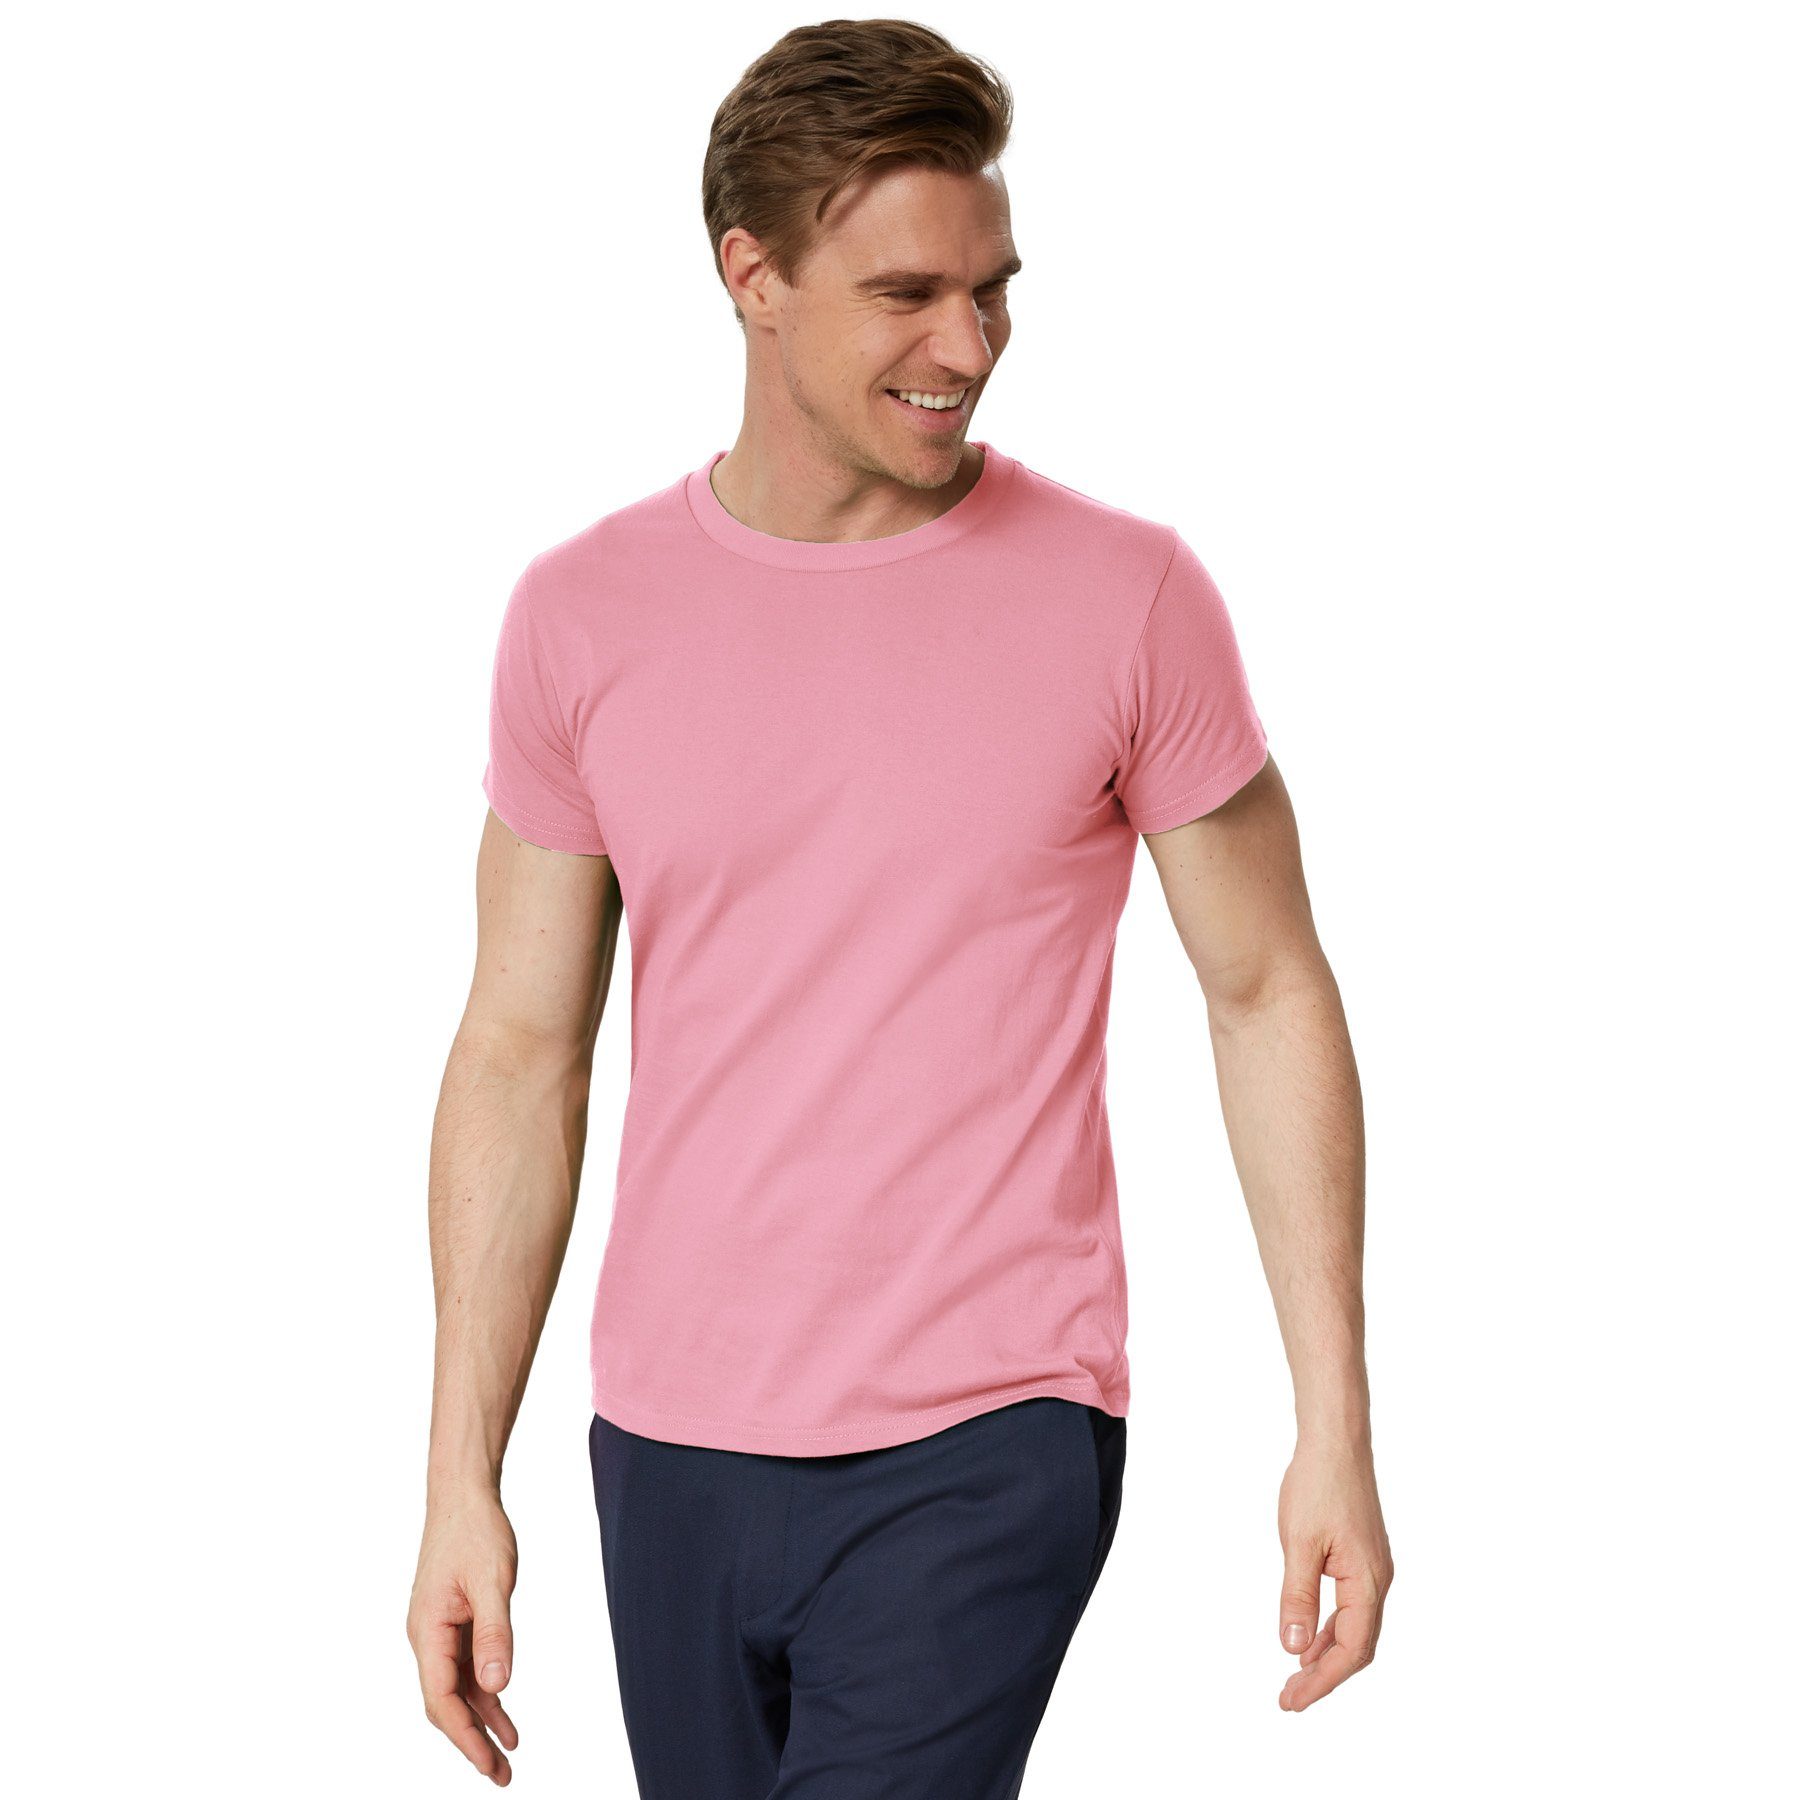 dressforfun T-Shirt T-Shirt Männer Rundhals rosa